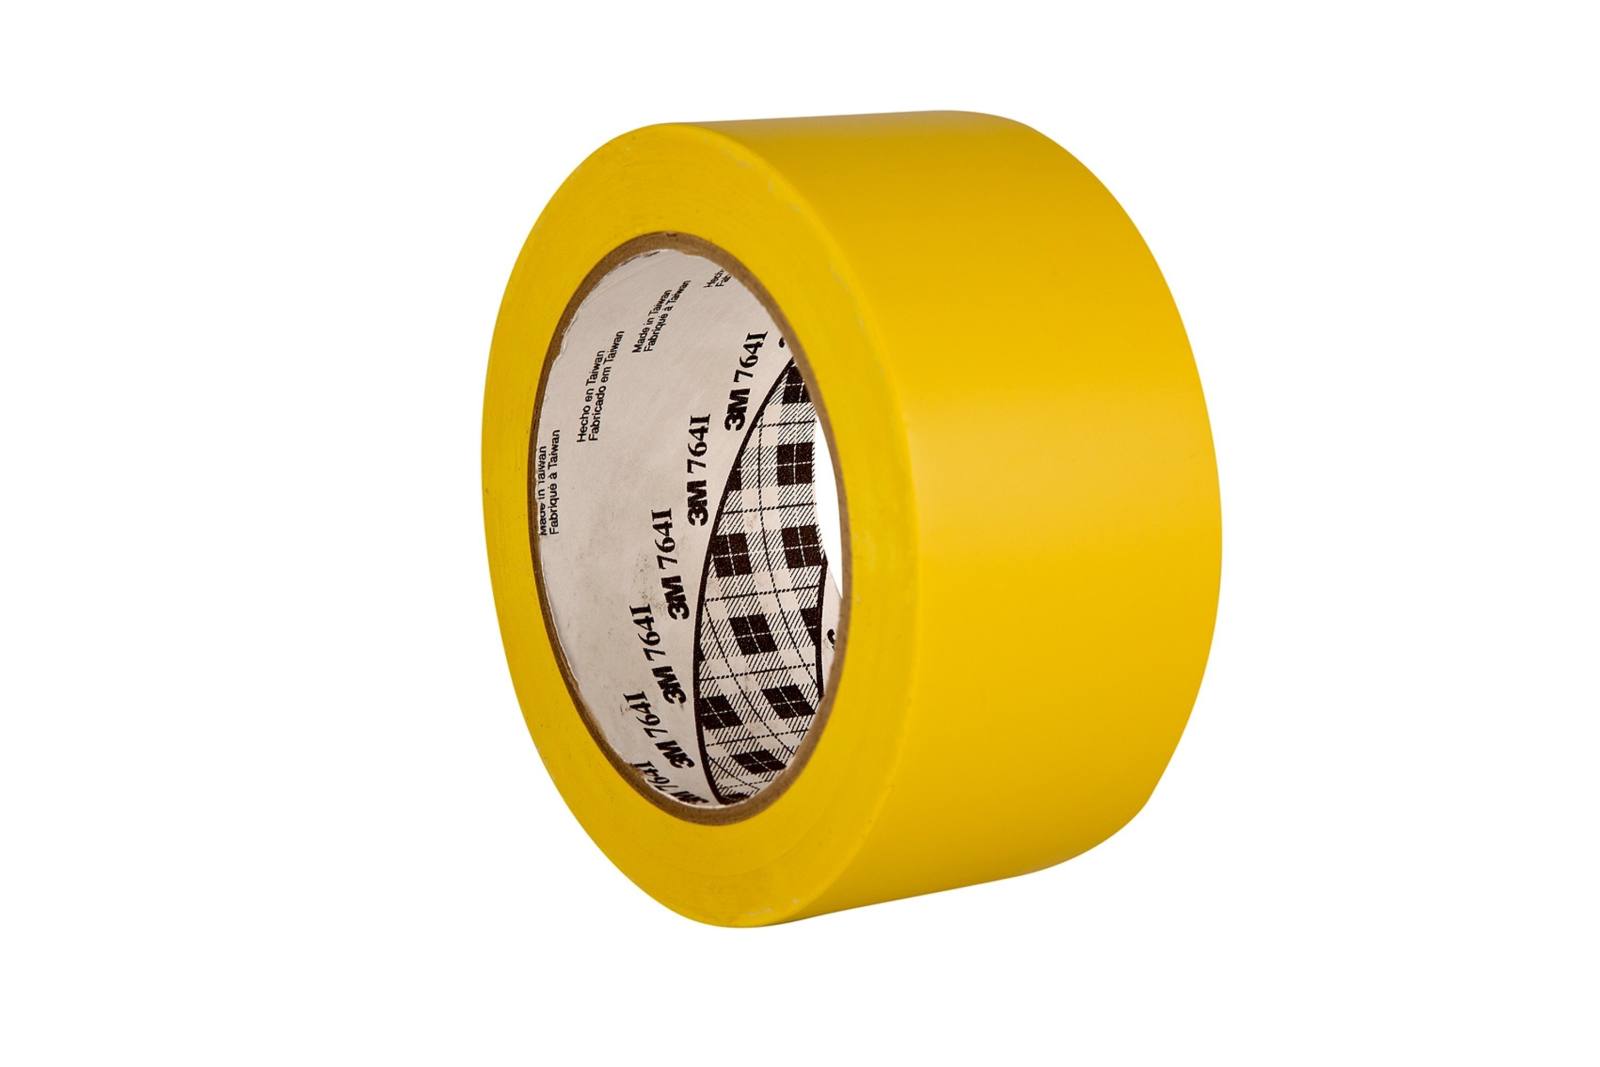 3M Nastro adesivo multiuso in PVC 764, giallo, 50 mm x 33 m, confezionato singolarmente in una pratica confezione